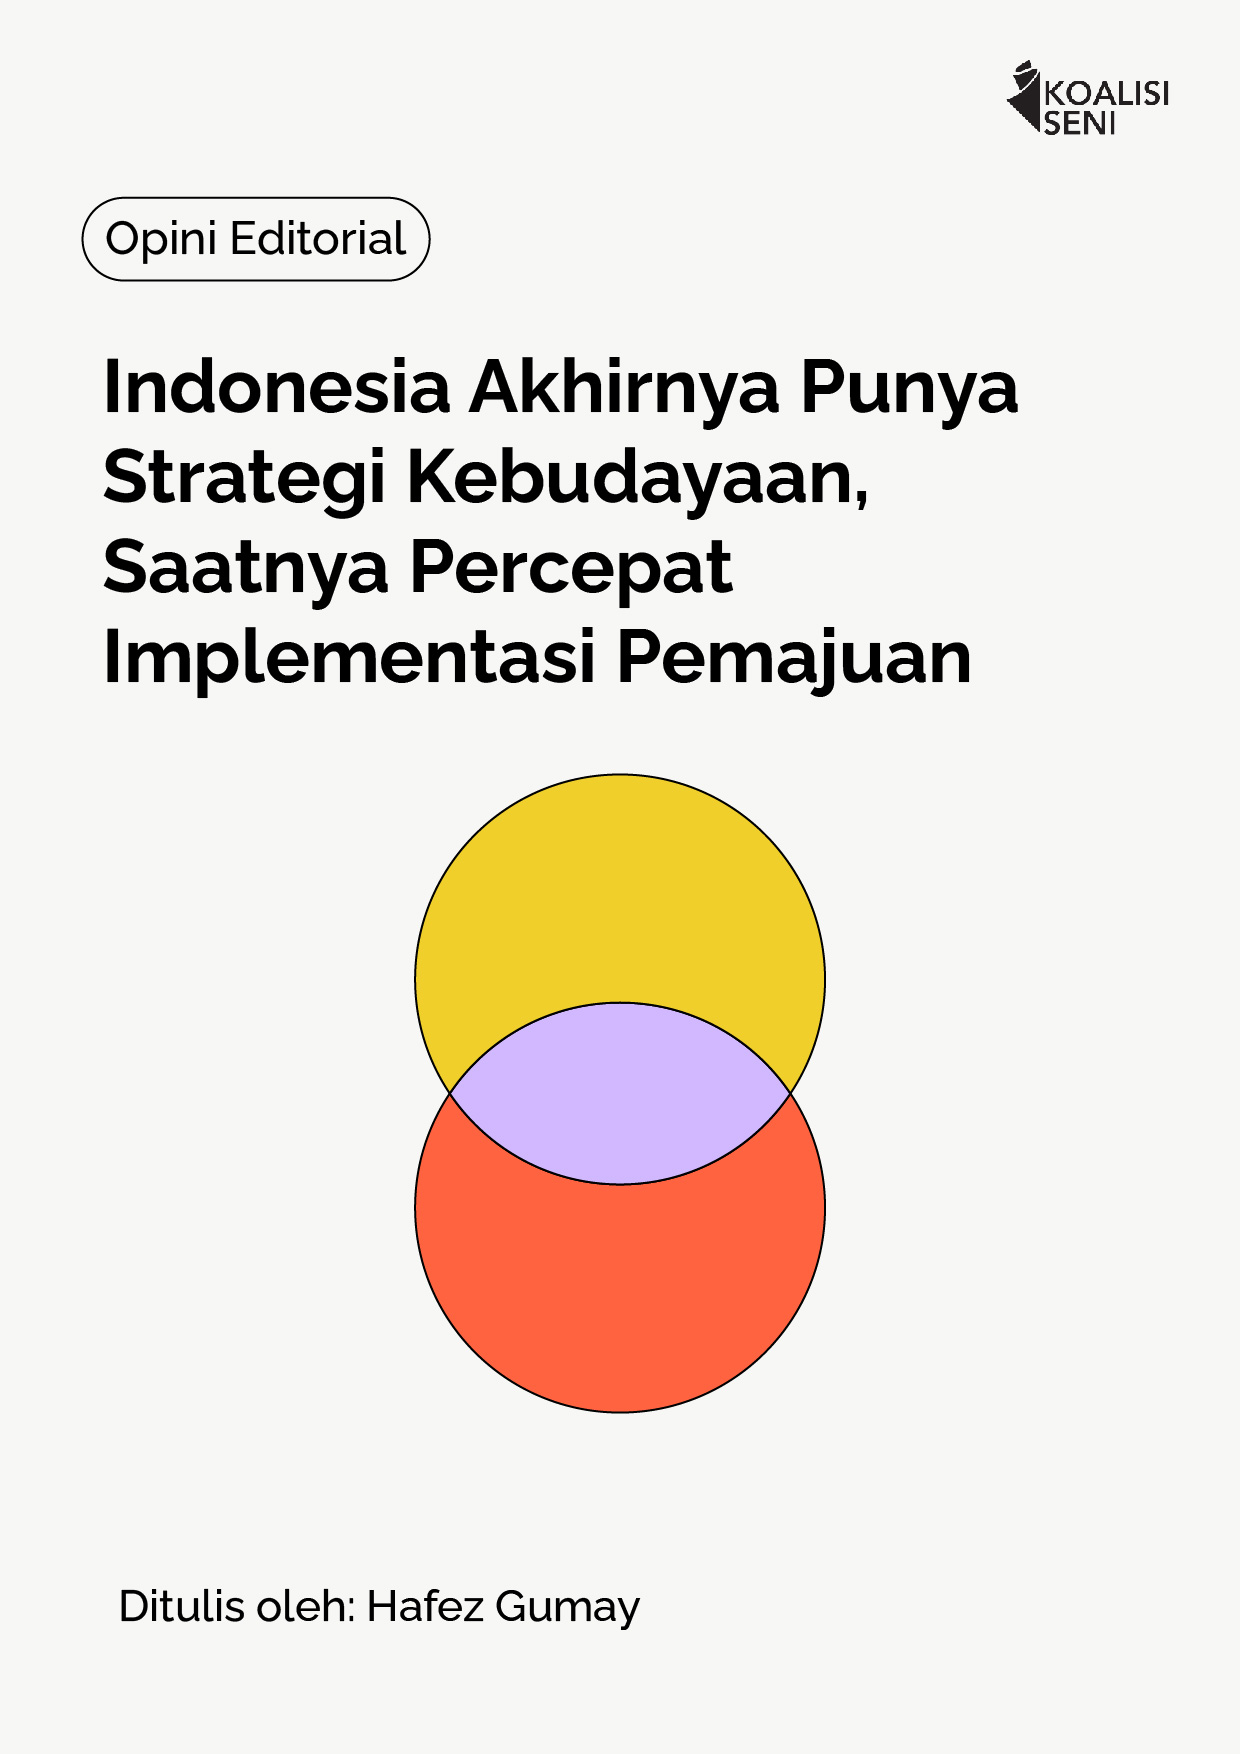 Indonesia Akhirnya Punya Strategi Kebudayaan, Saatnya Percepat Implementasi Pemajuan